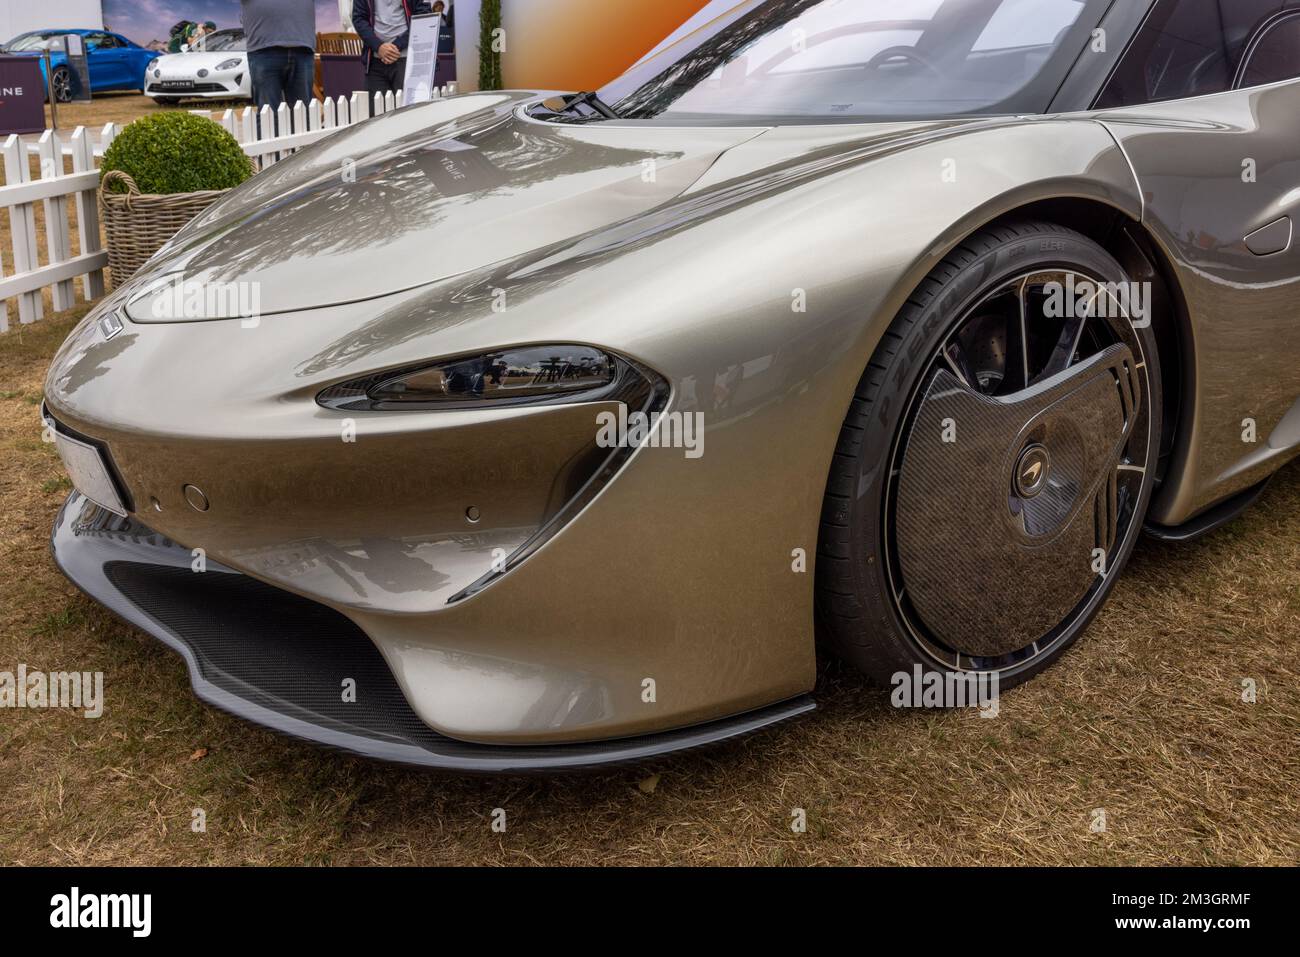 McLaren Speedtail, exposée au salon automobile Concours d’Elégance, qui s’est tenu au Palais de Blenheim le 4th septembre 2022. Banque D'Images